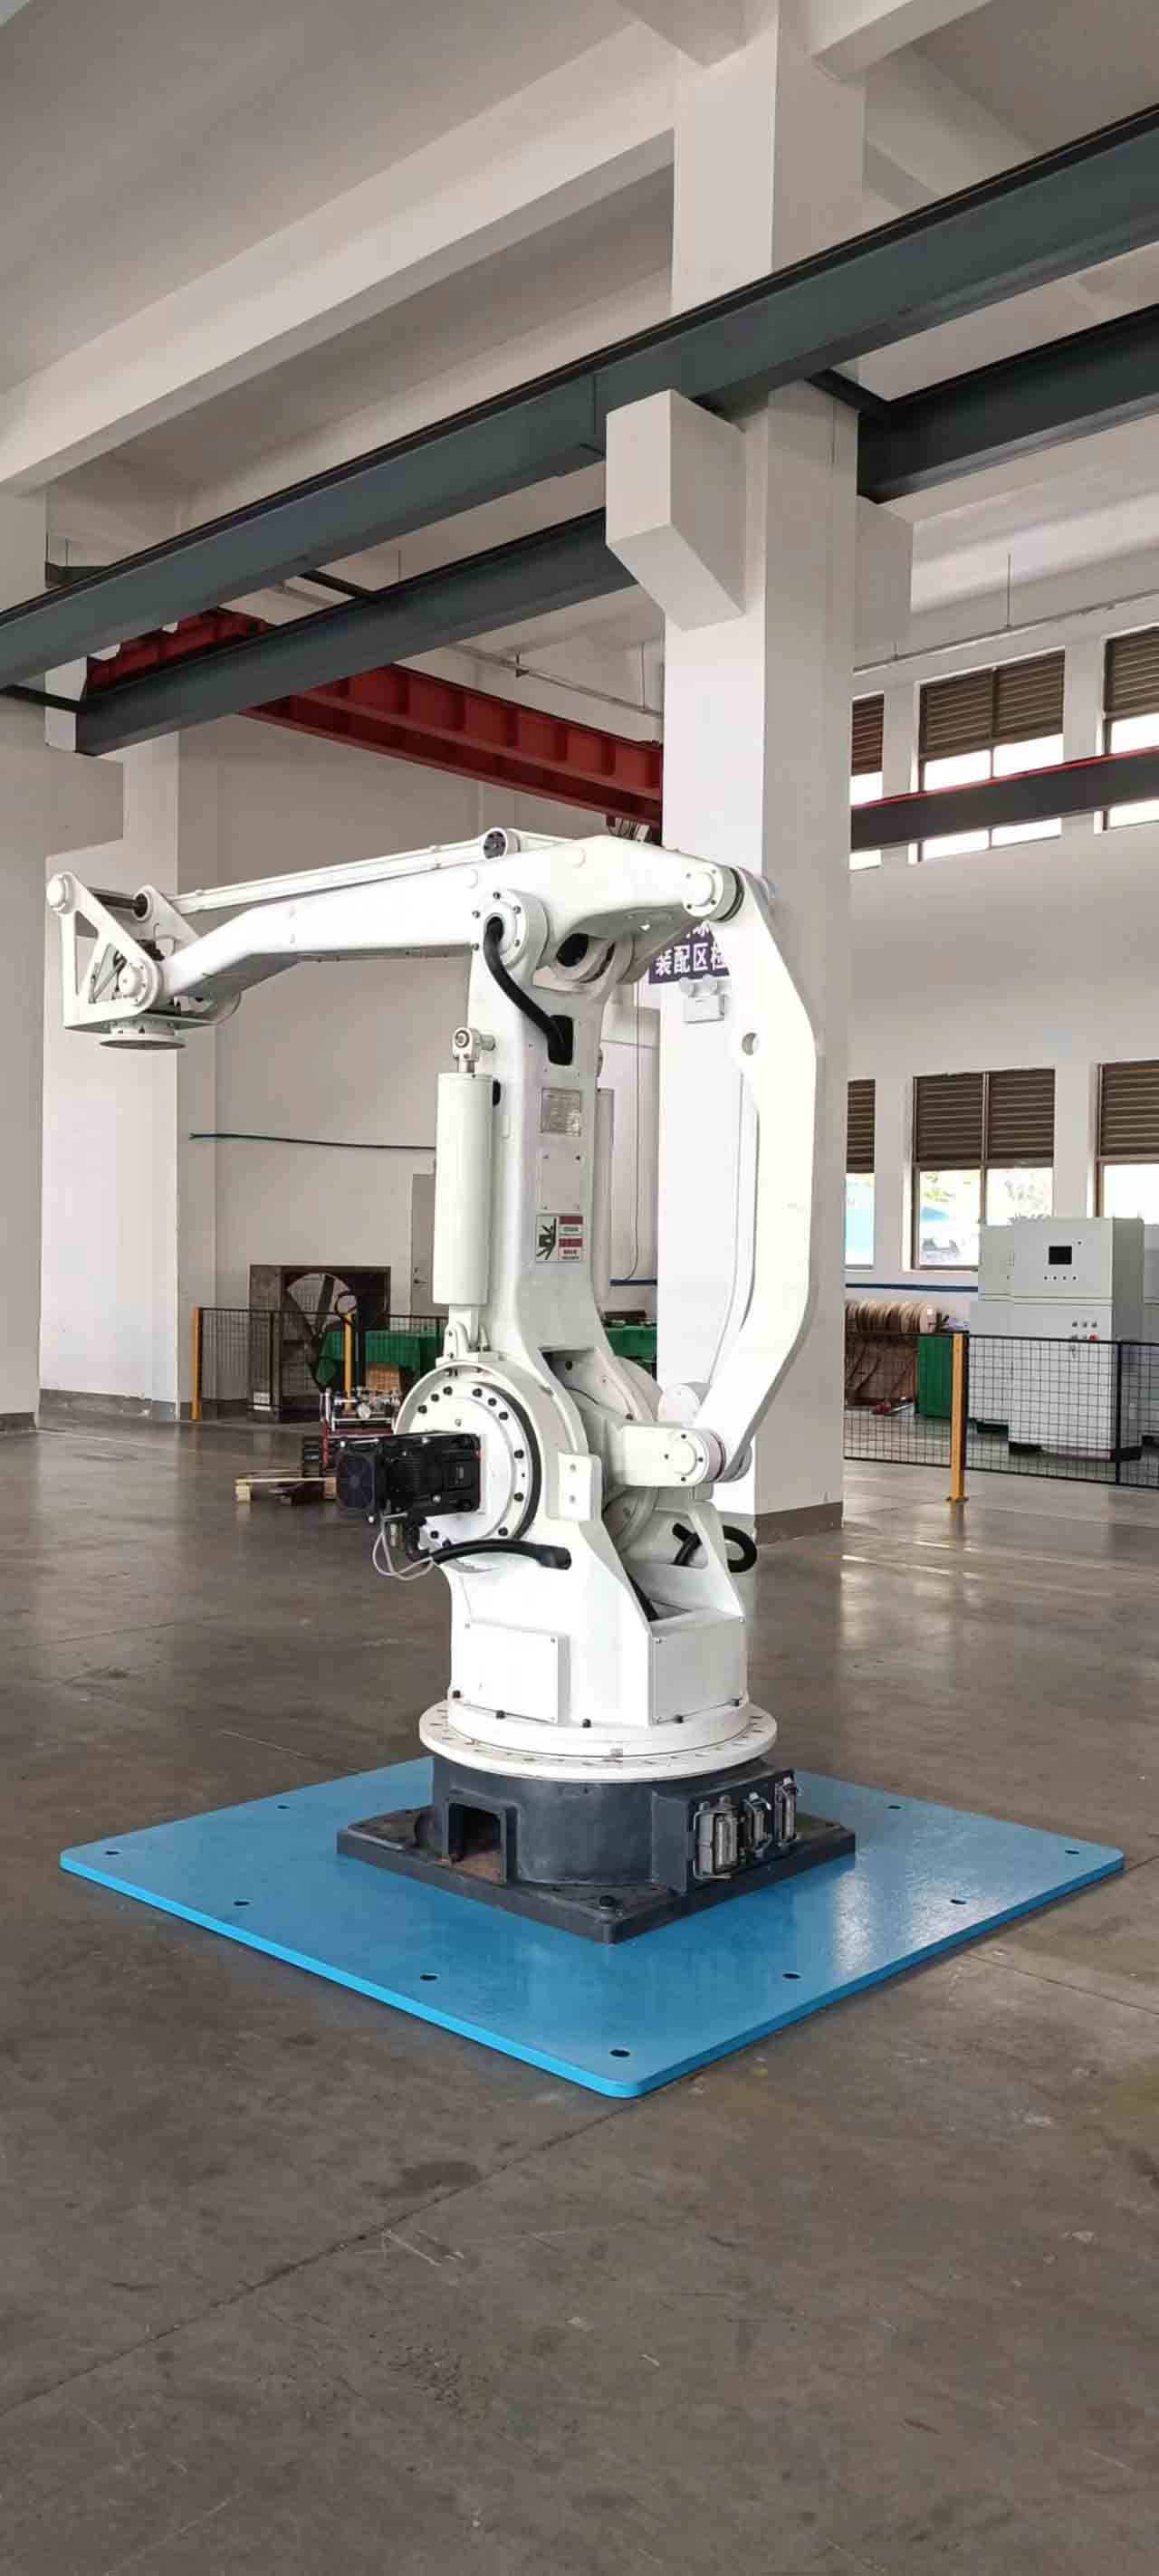 Робот-палетоукладчик грузоподъемностью 800 кг